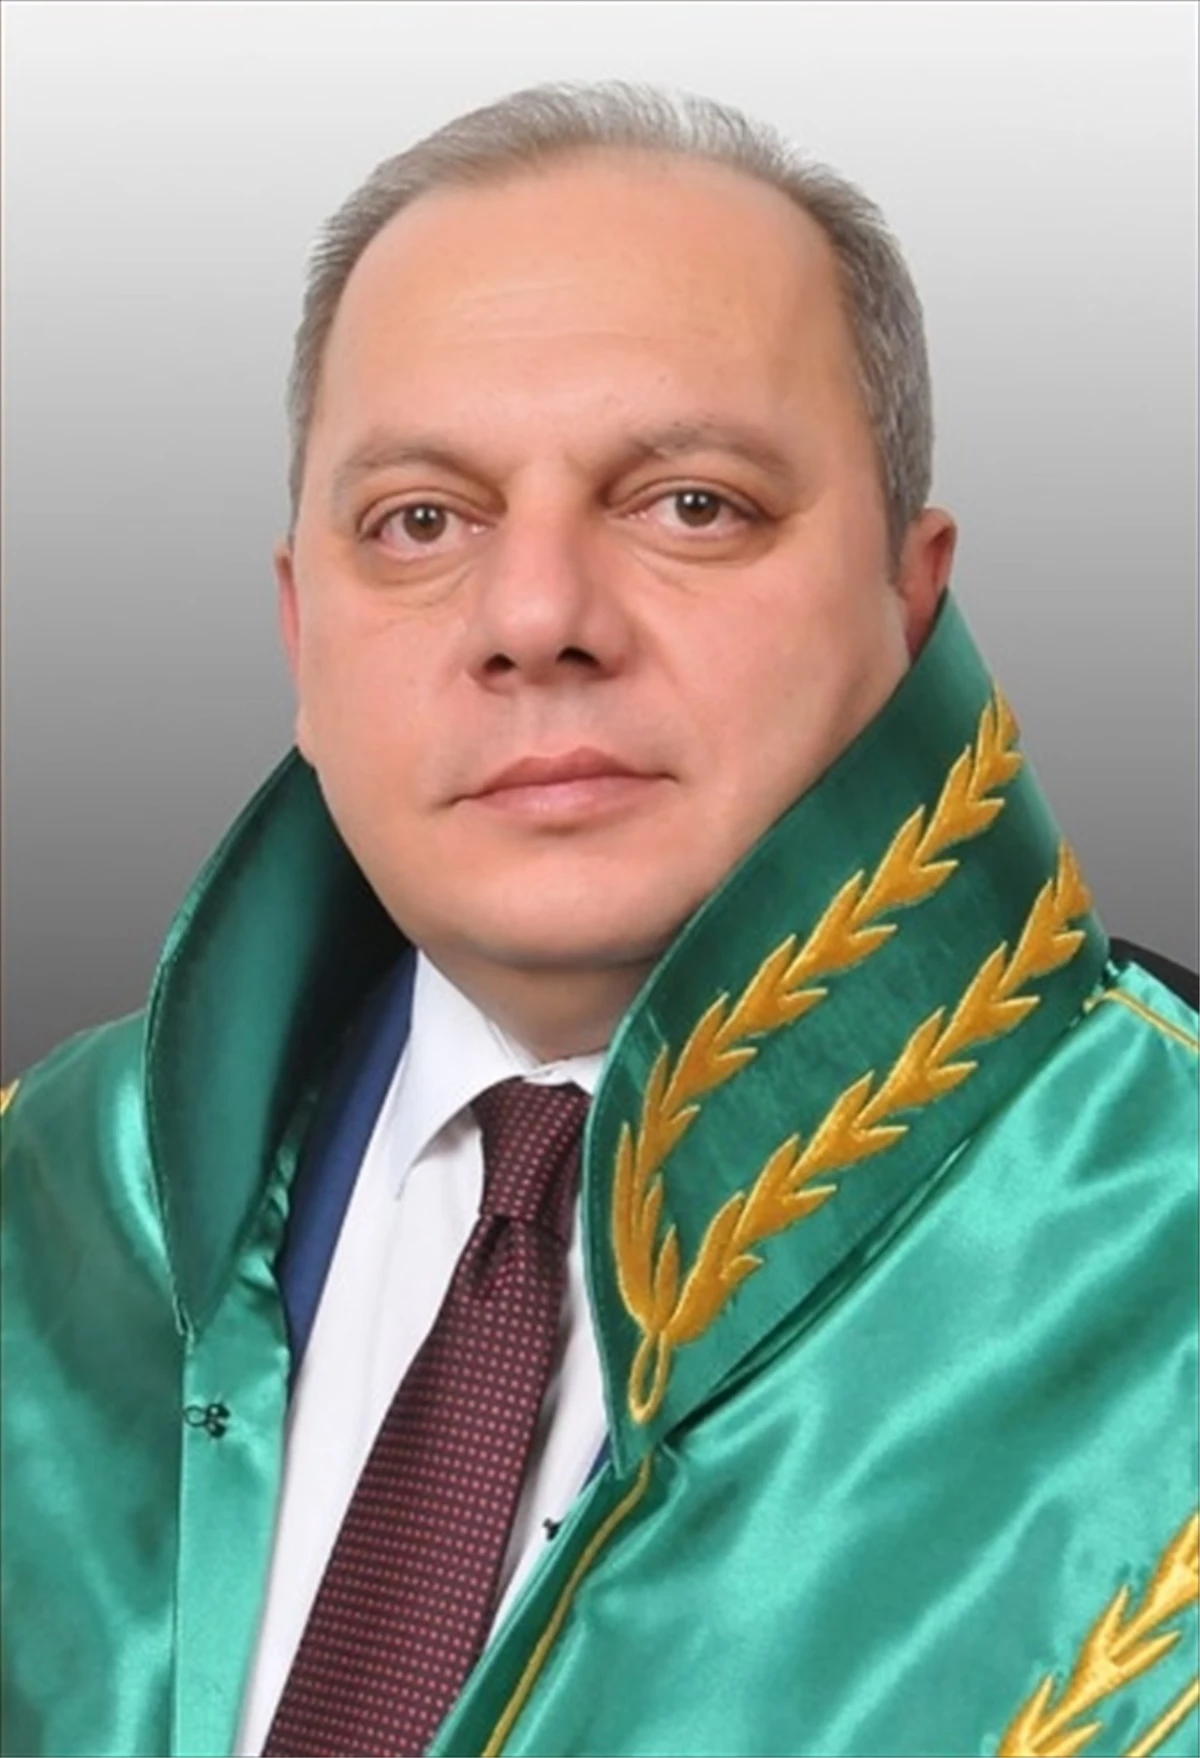 Yargıtay 3. Hukuk Dairesi Başkanı Ömer Kerkez, Yargıtay Başkanlığına seçildi